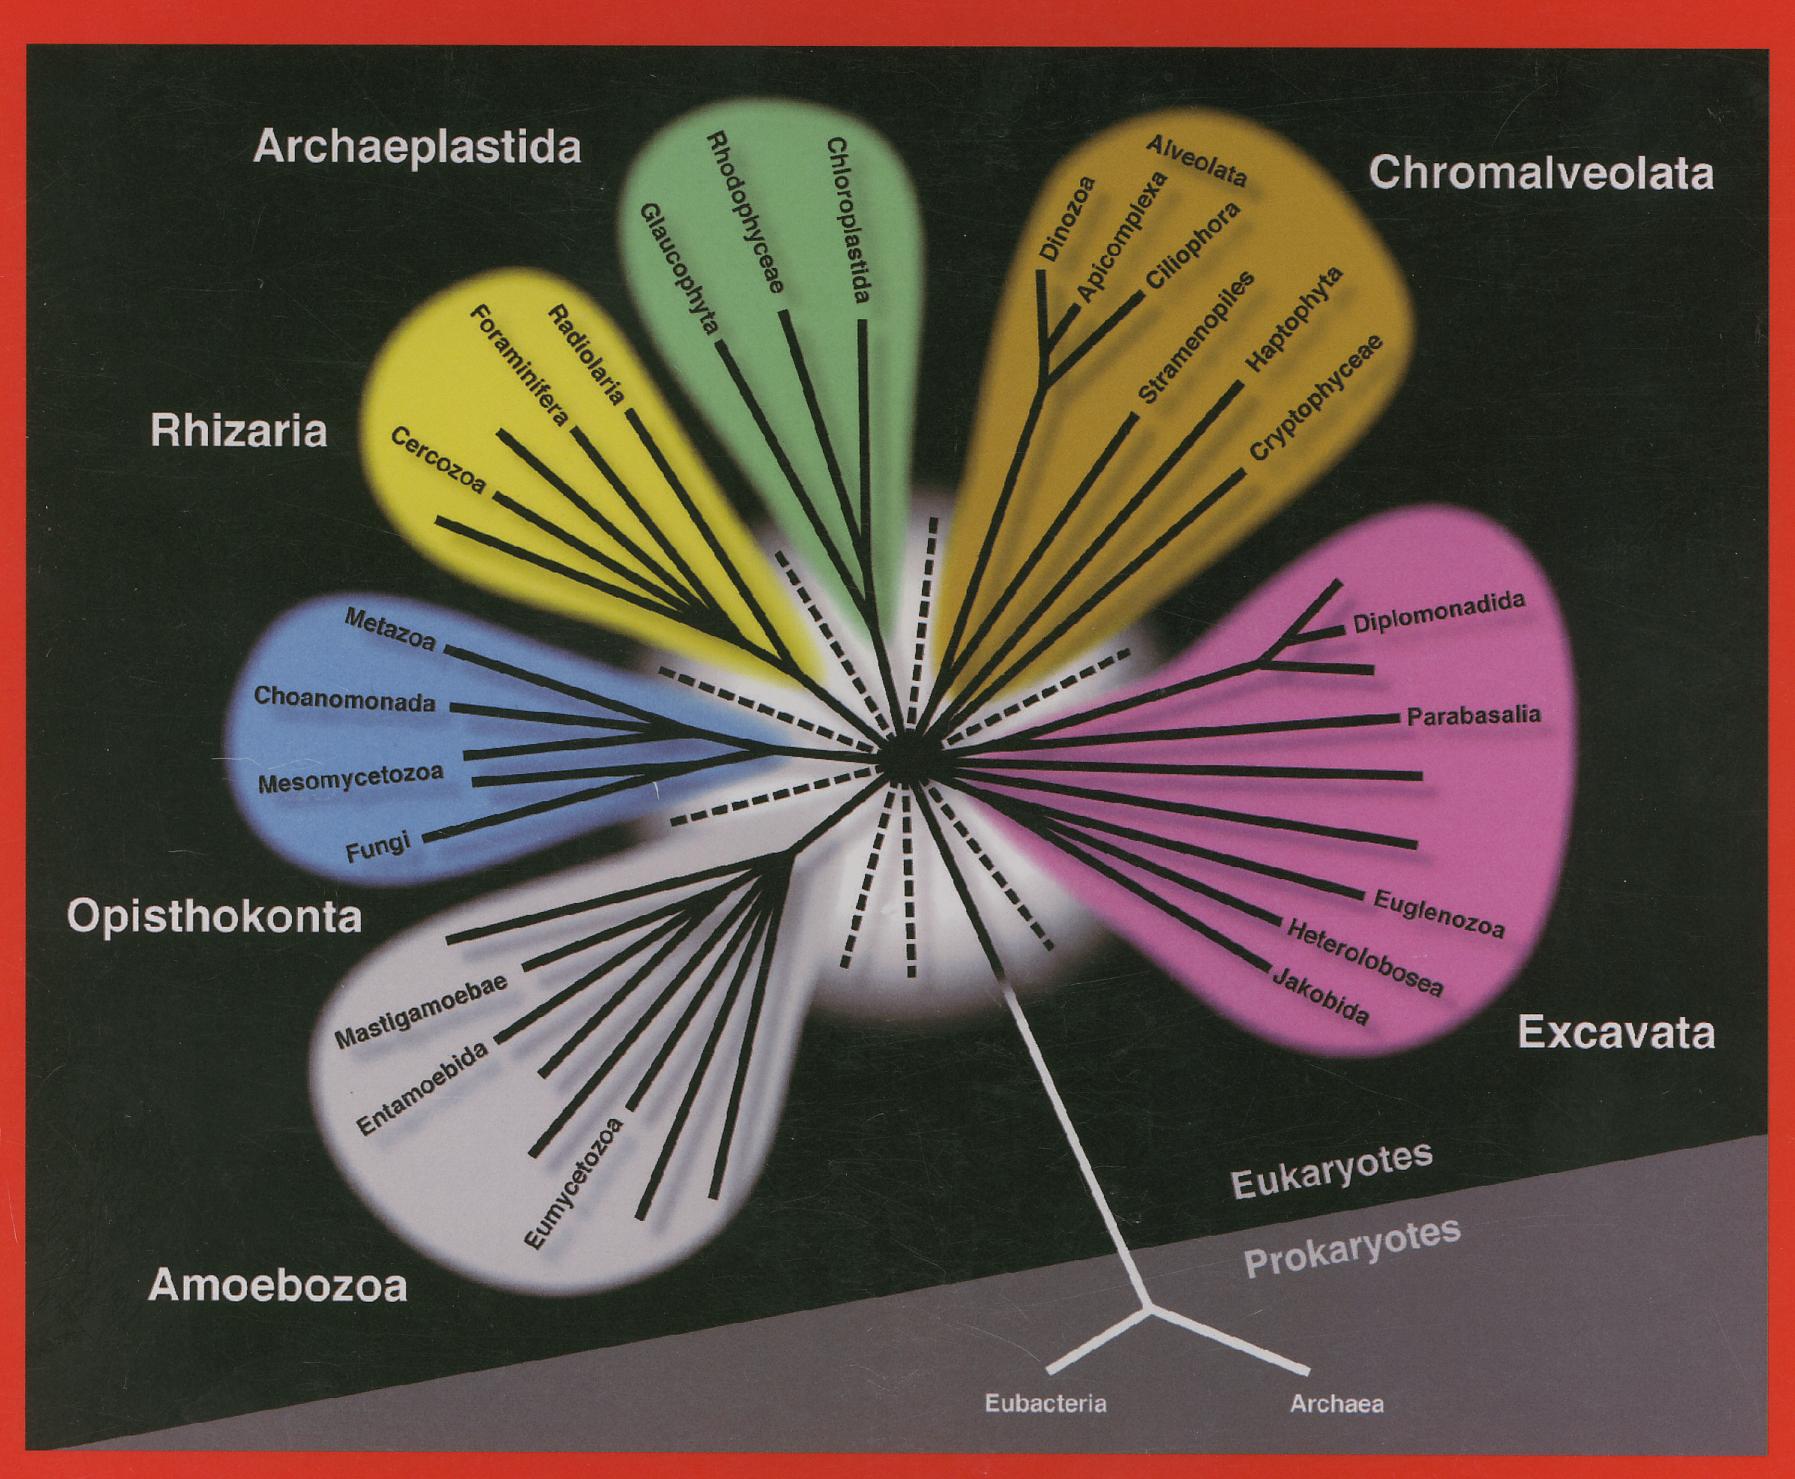 kořenonožci (dírkonošci, mřížovci) rostliny, řasy Apicomplexa, nálevníci, opalinky, Dinozoa houby Choanozoa